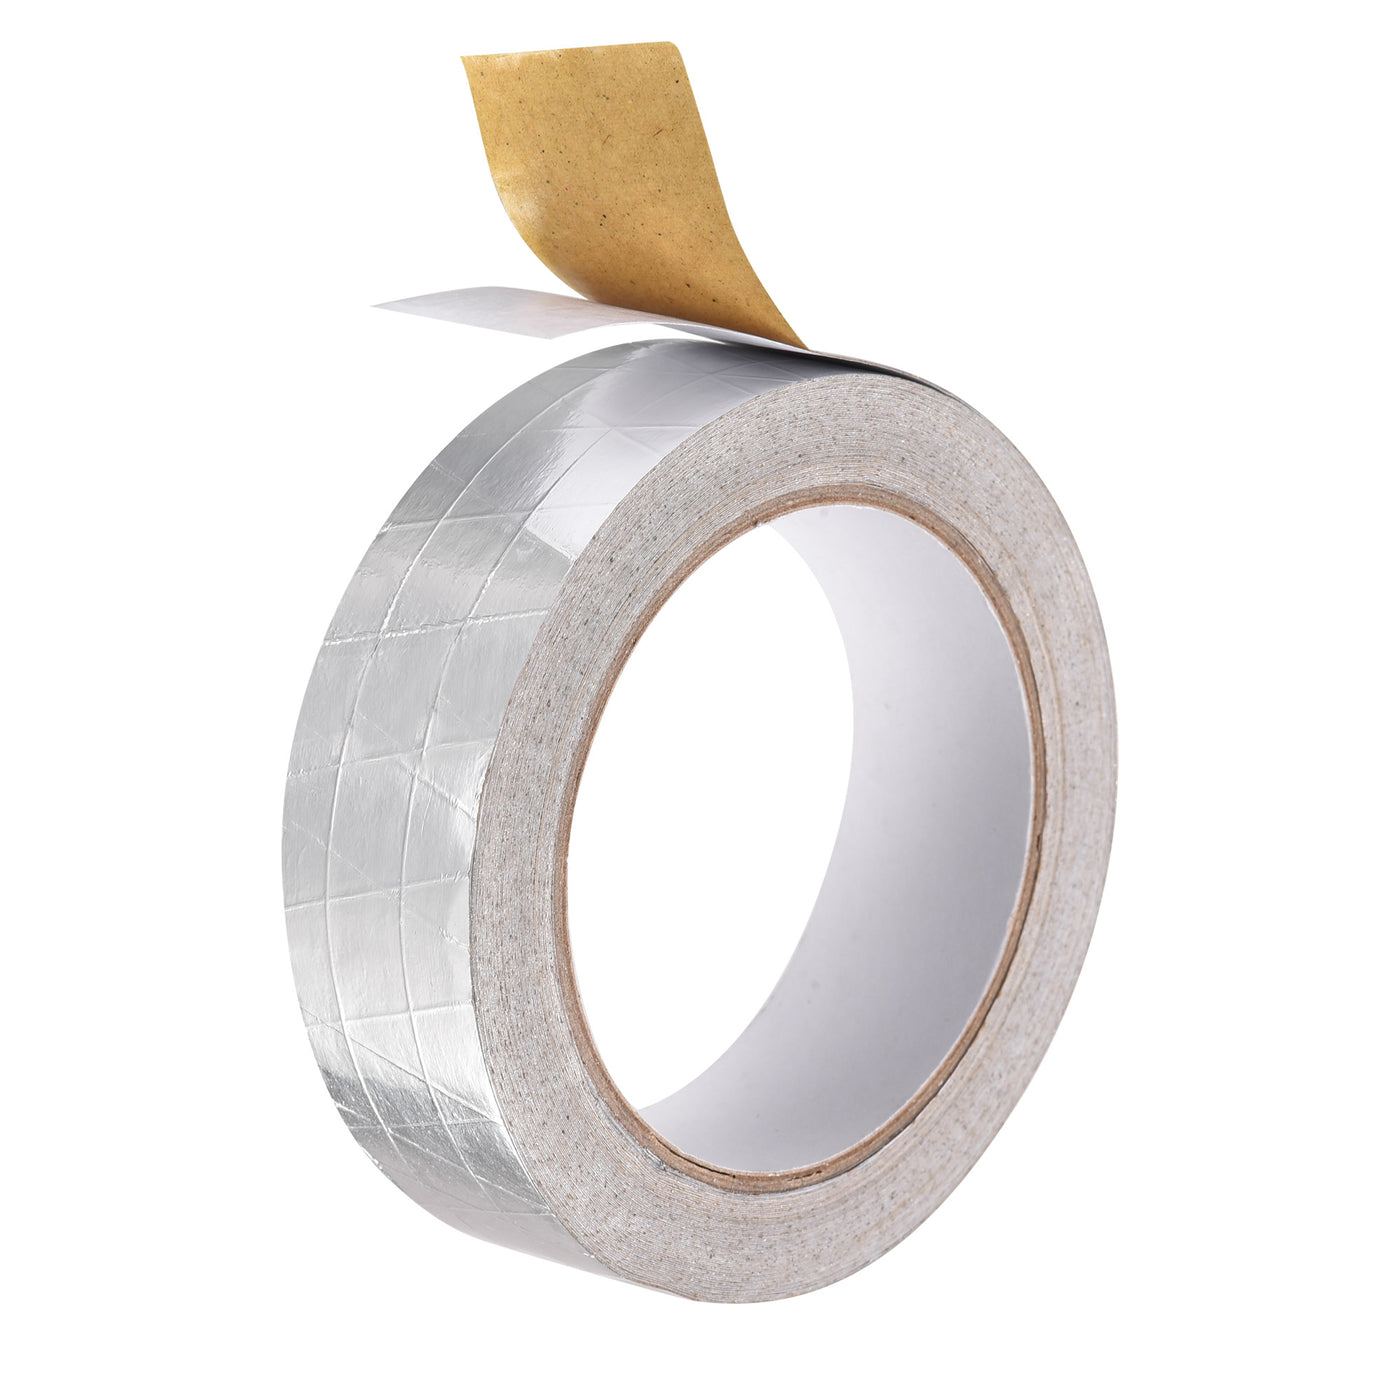 uxcell Uxcell Fiberglass Aluminum Foil Tape High Temperature Tape 30mmx20m/65ft